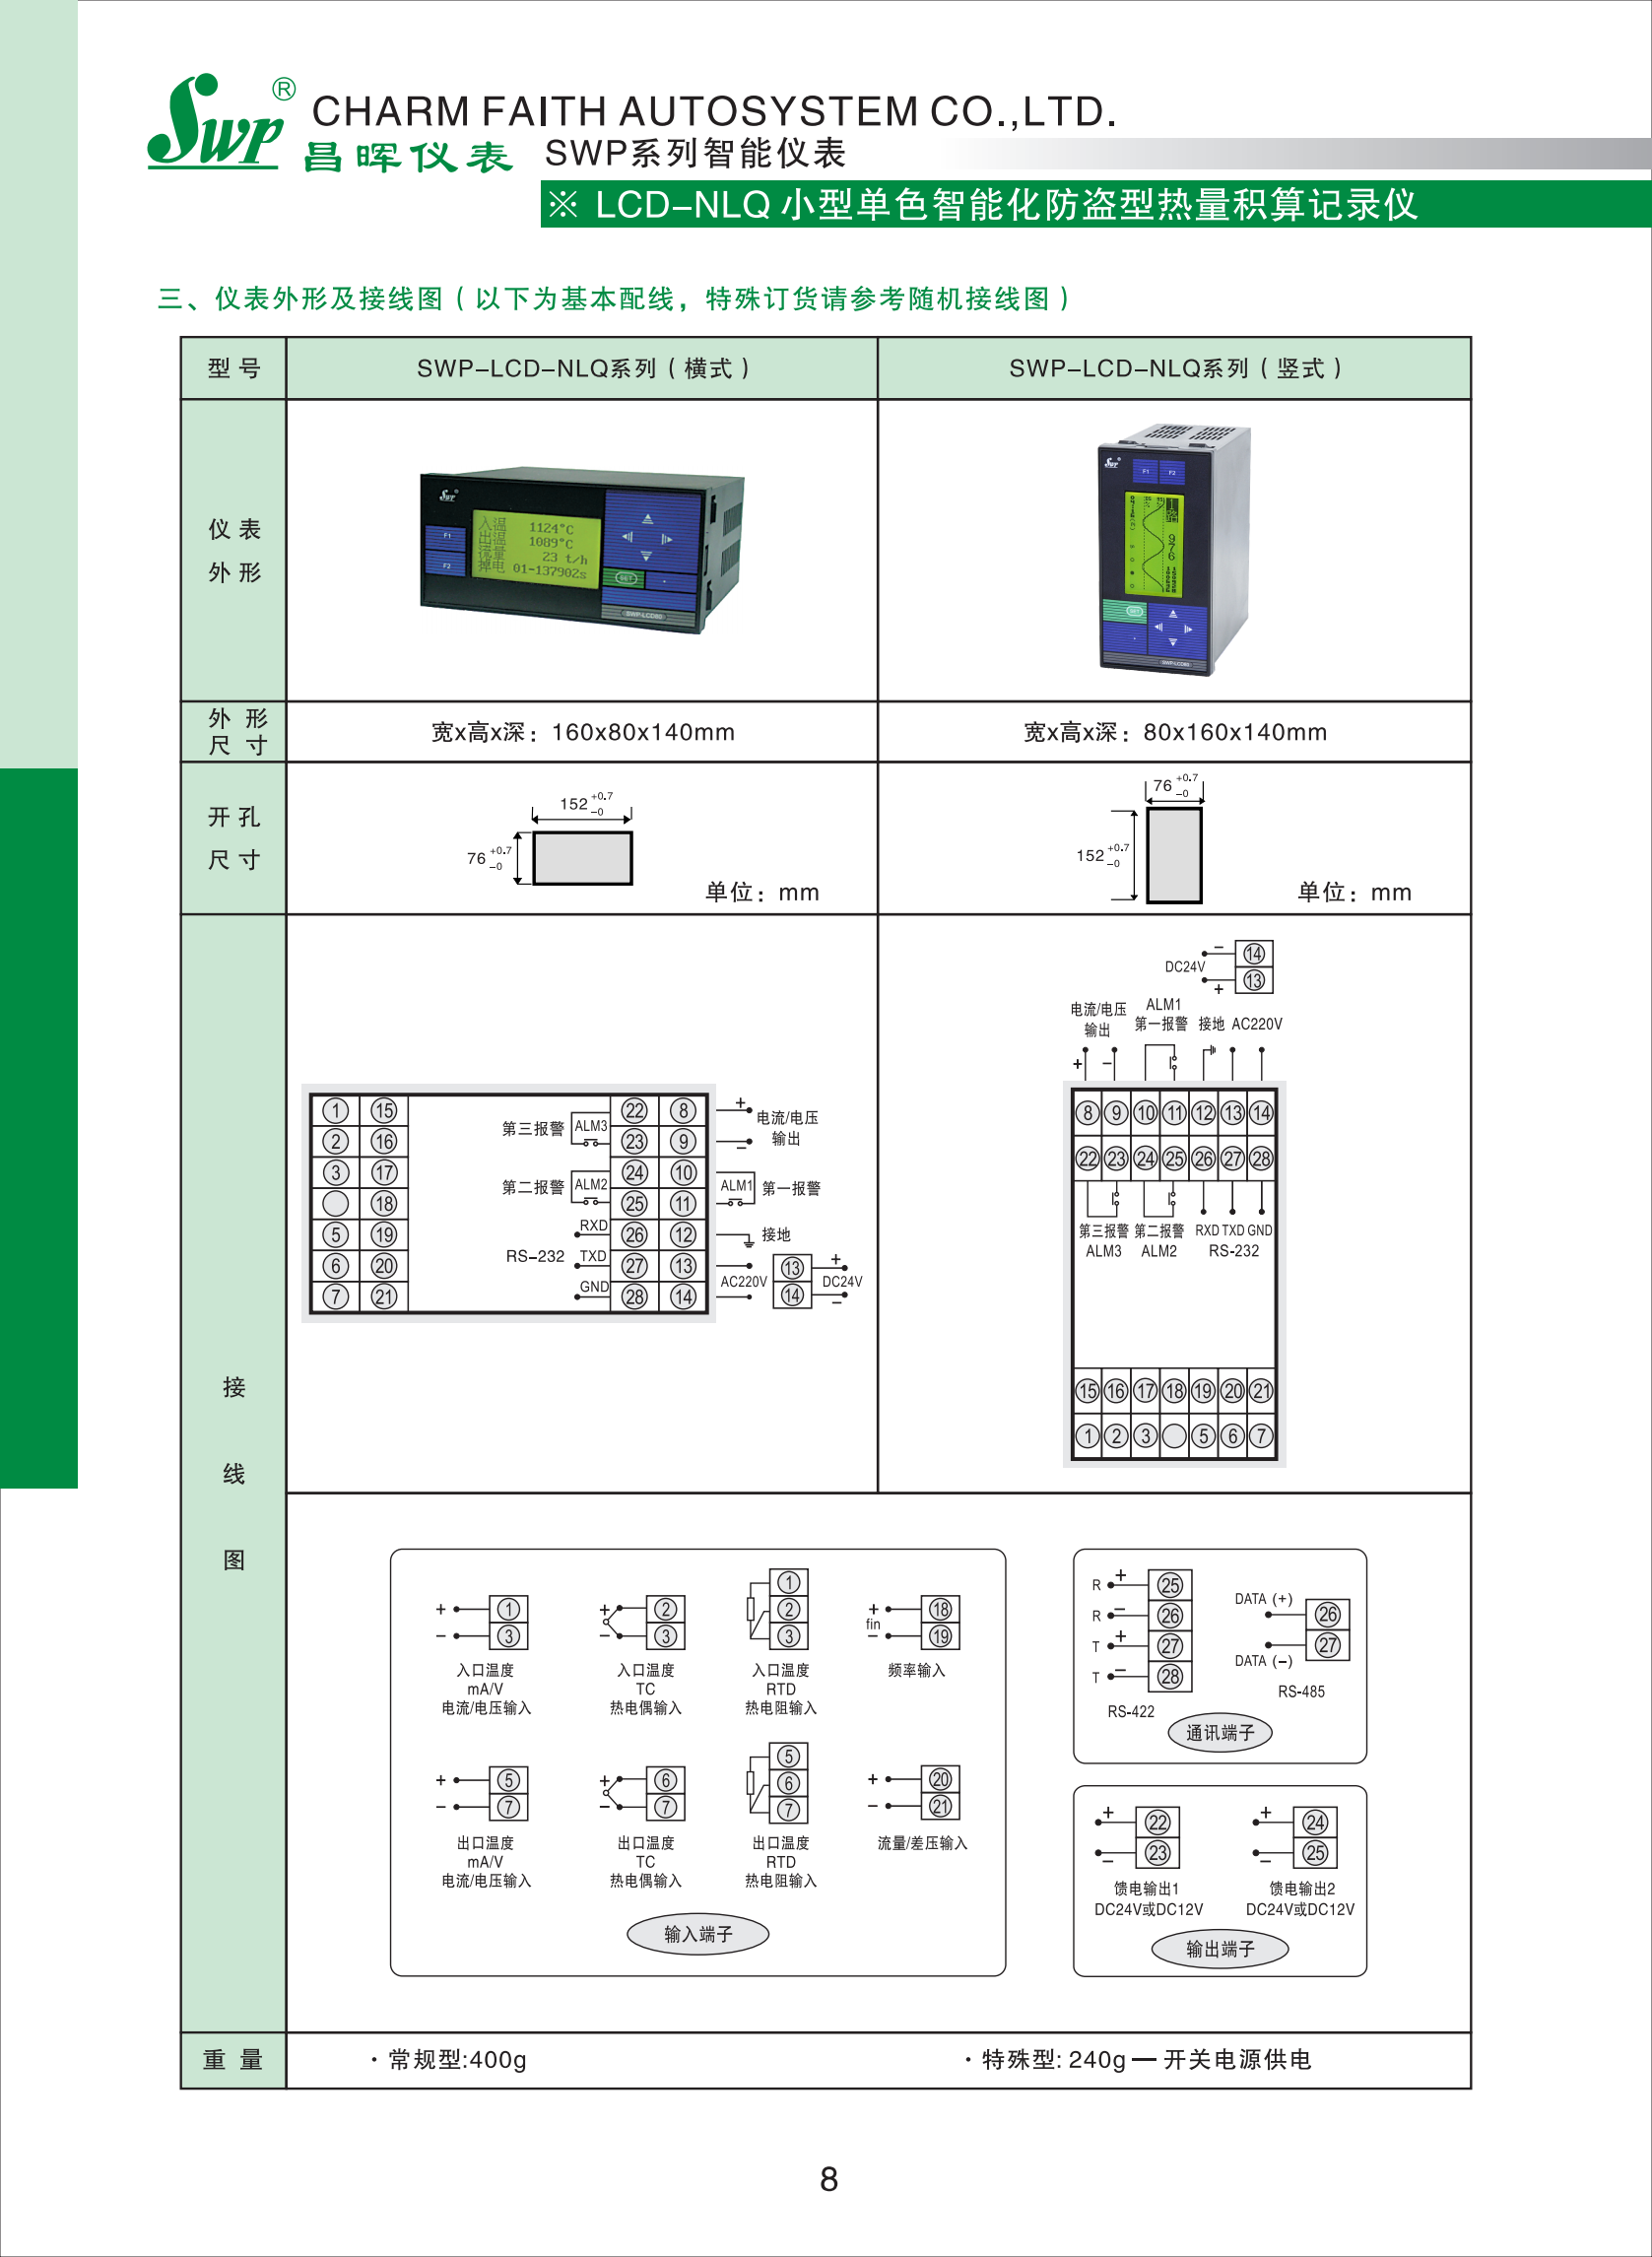 LCD-NLQ小型单色智能化防盗型热量积算记录仪选型_02.png